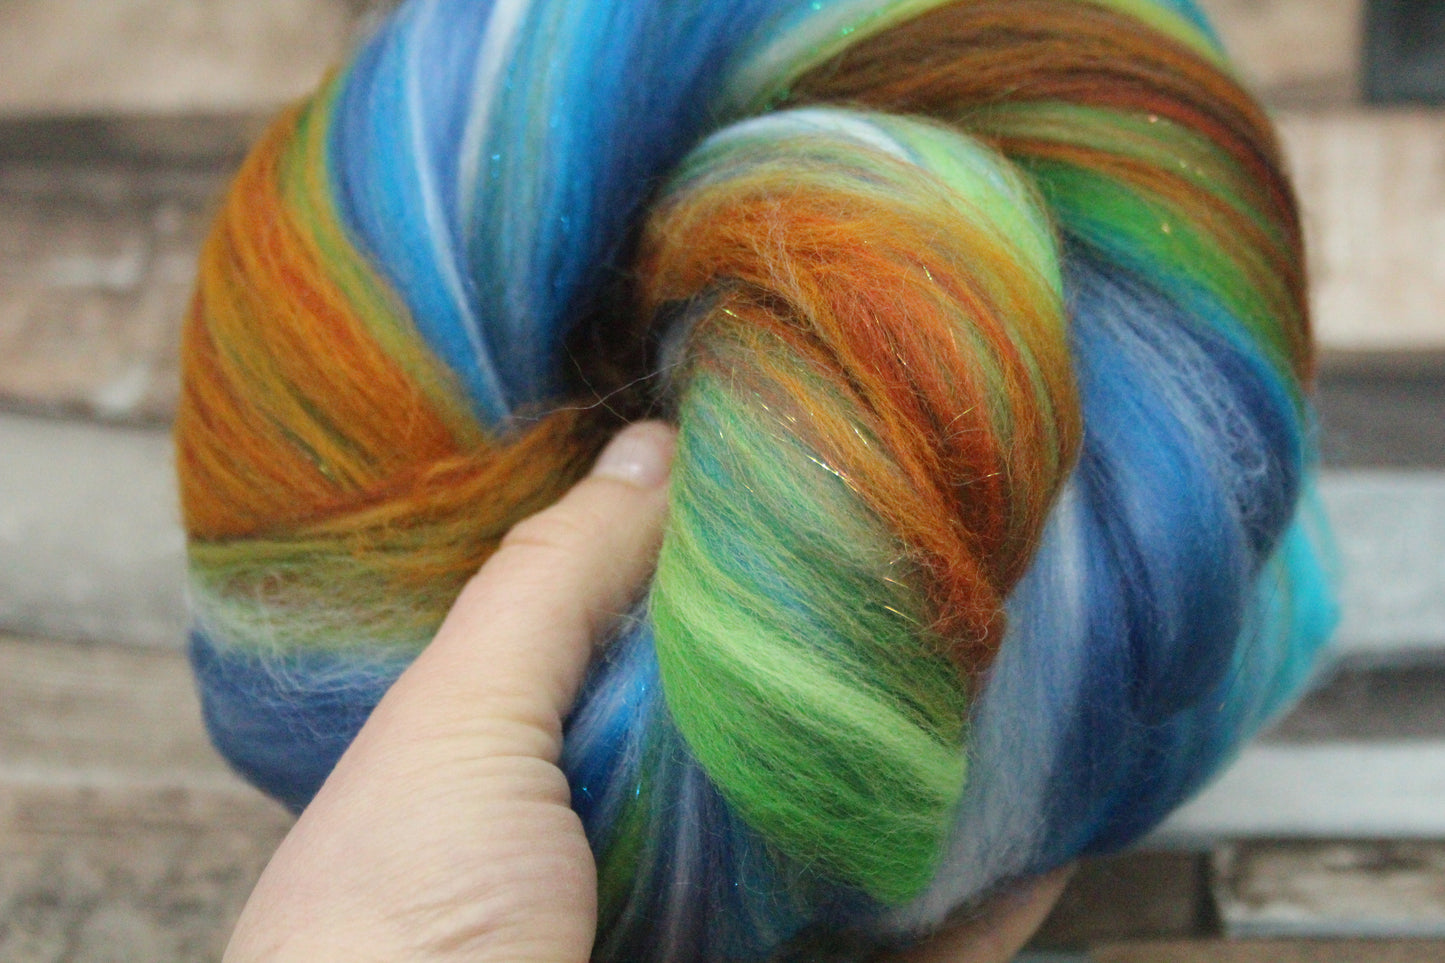 Merino Wool Blend - Brown Green Blue - 42 grams / 1.4 oz  - Fibre for felting, weaving or spinning